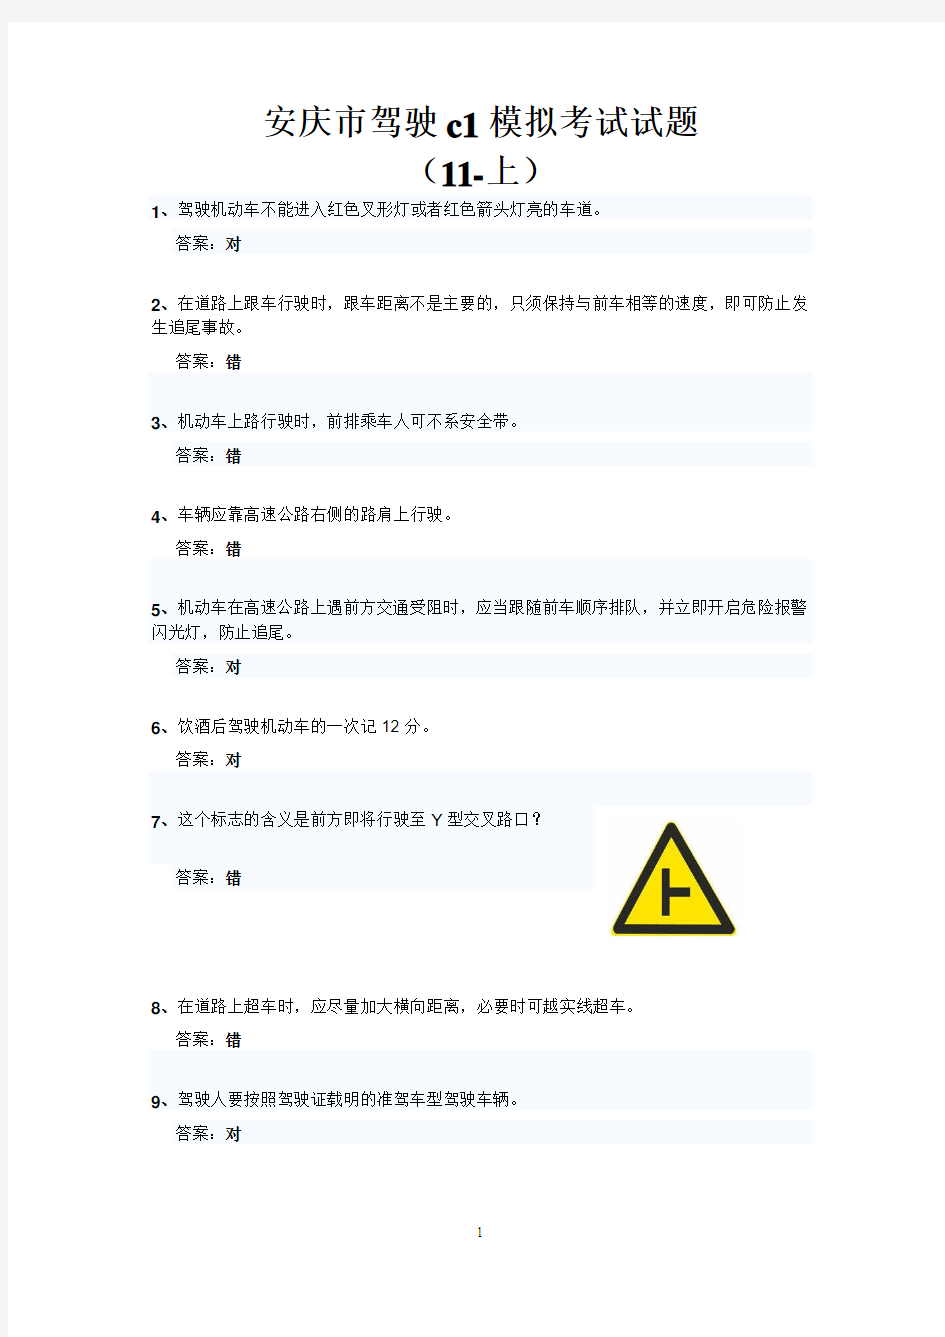 安庆市驾驶c1模拟考试试题(11-上)